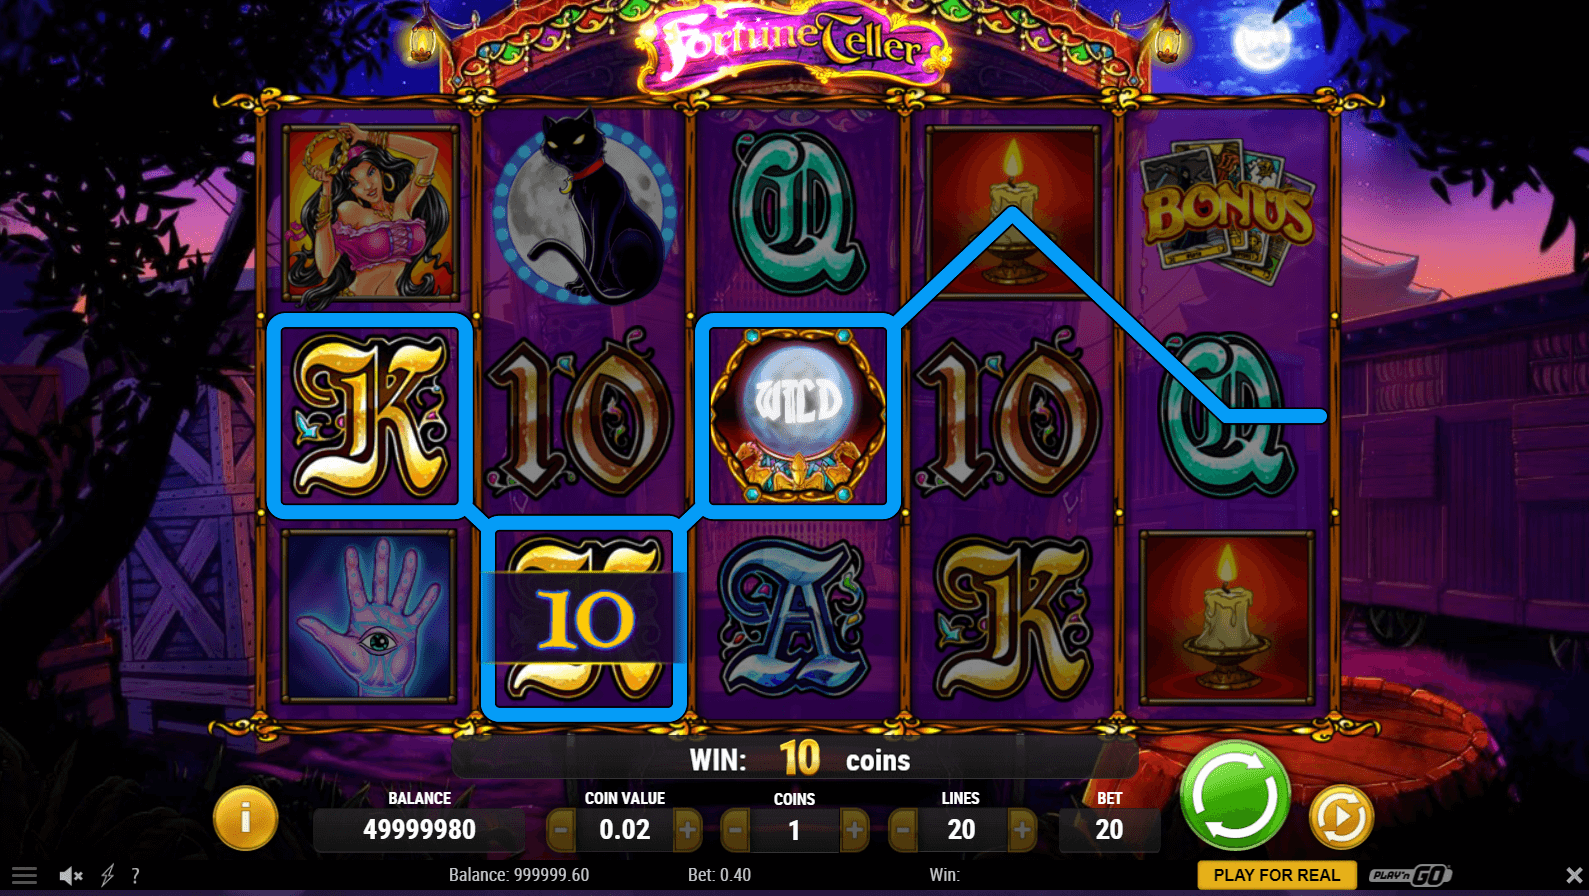 Free Fortune Teller Slot Game